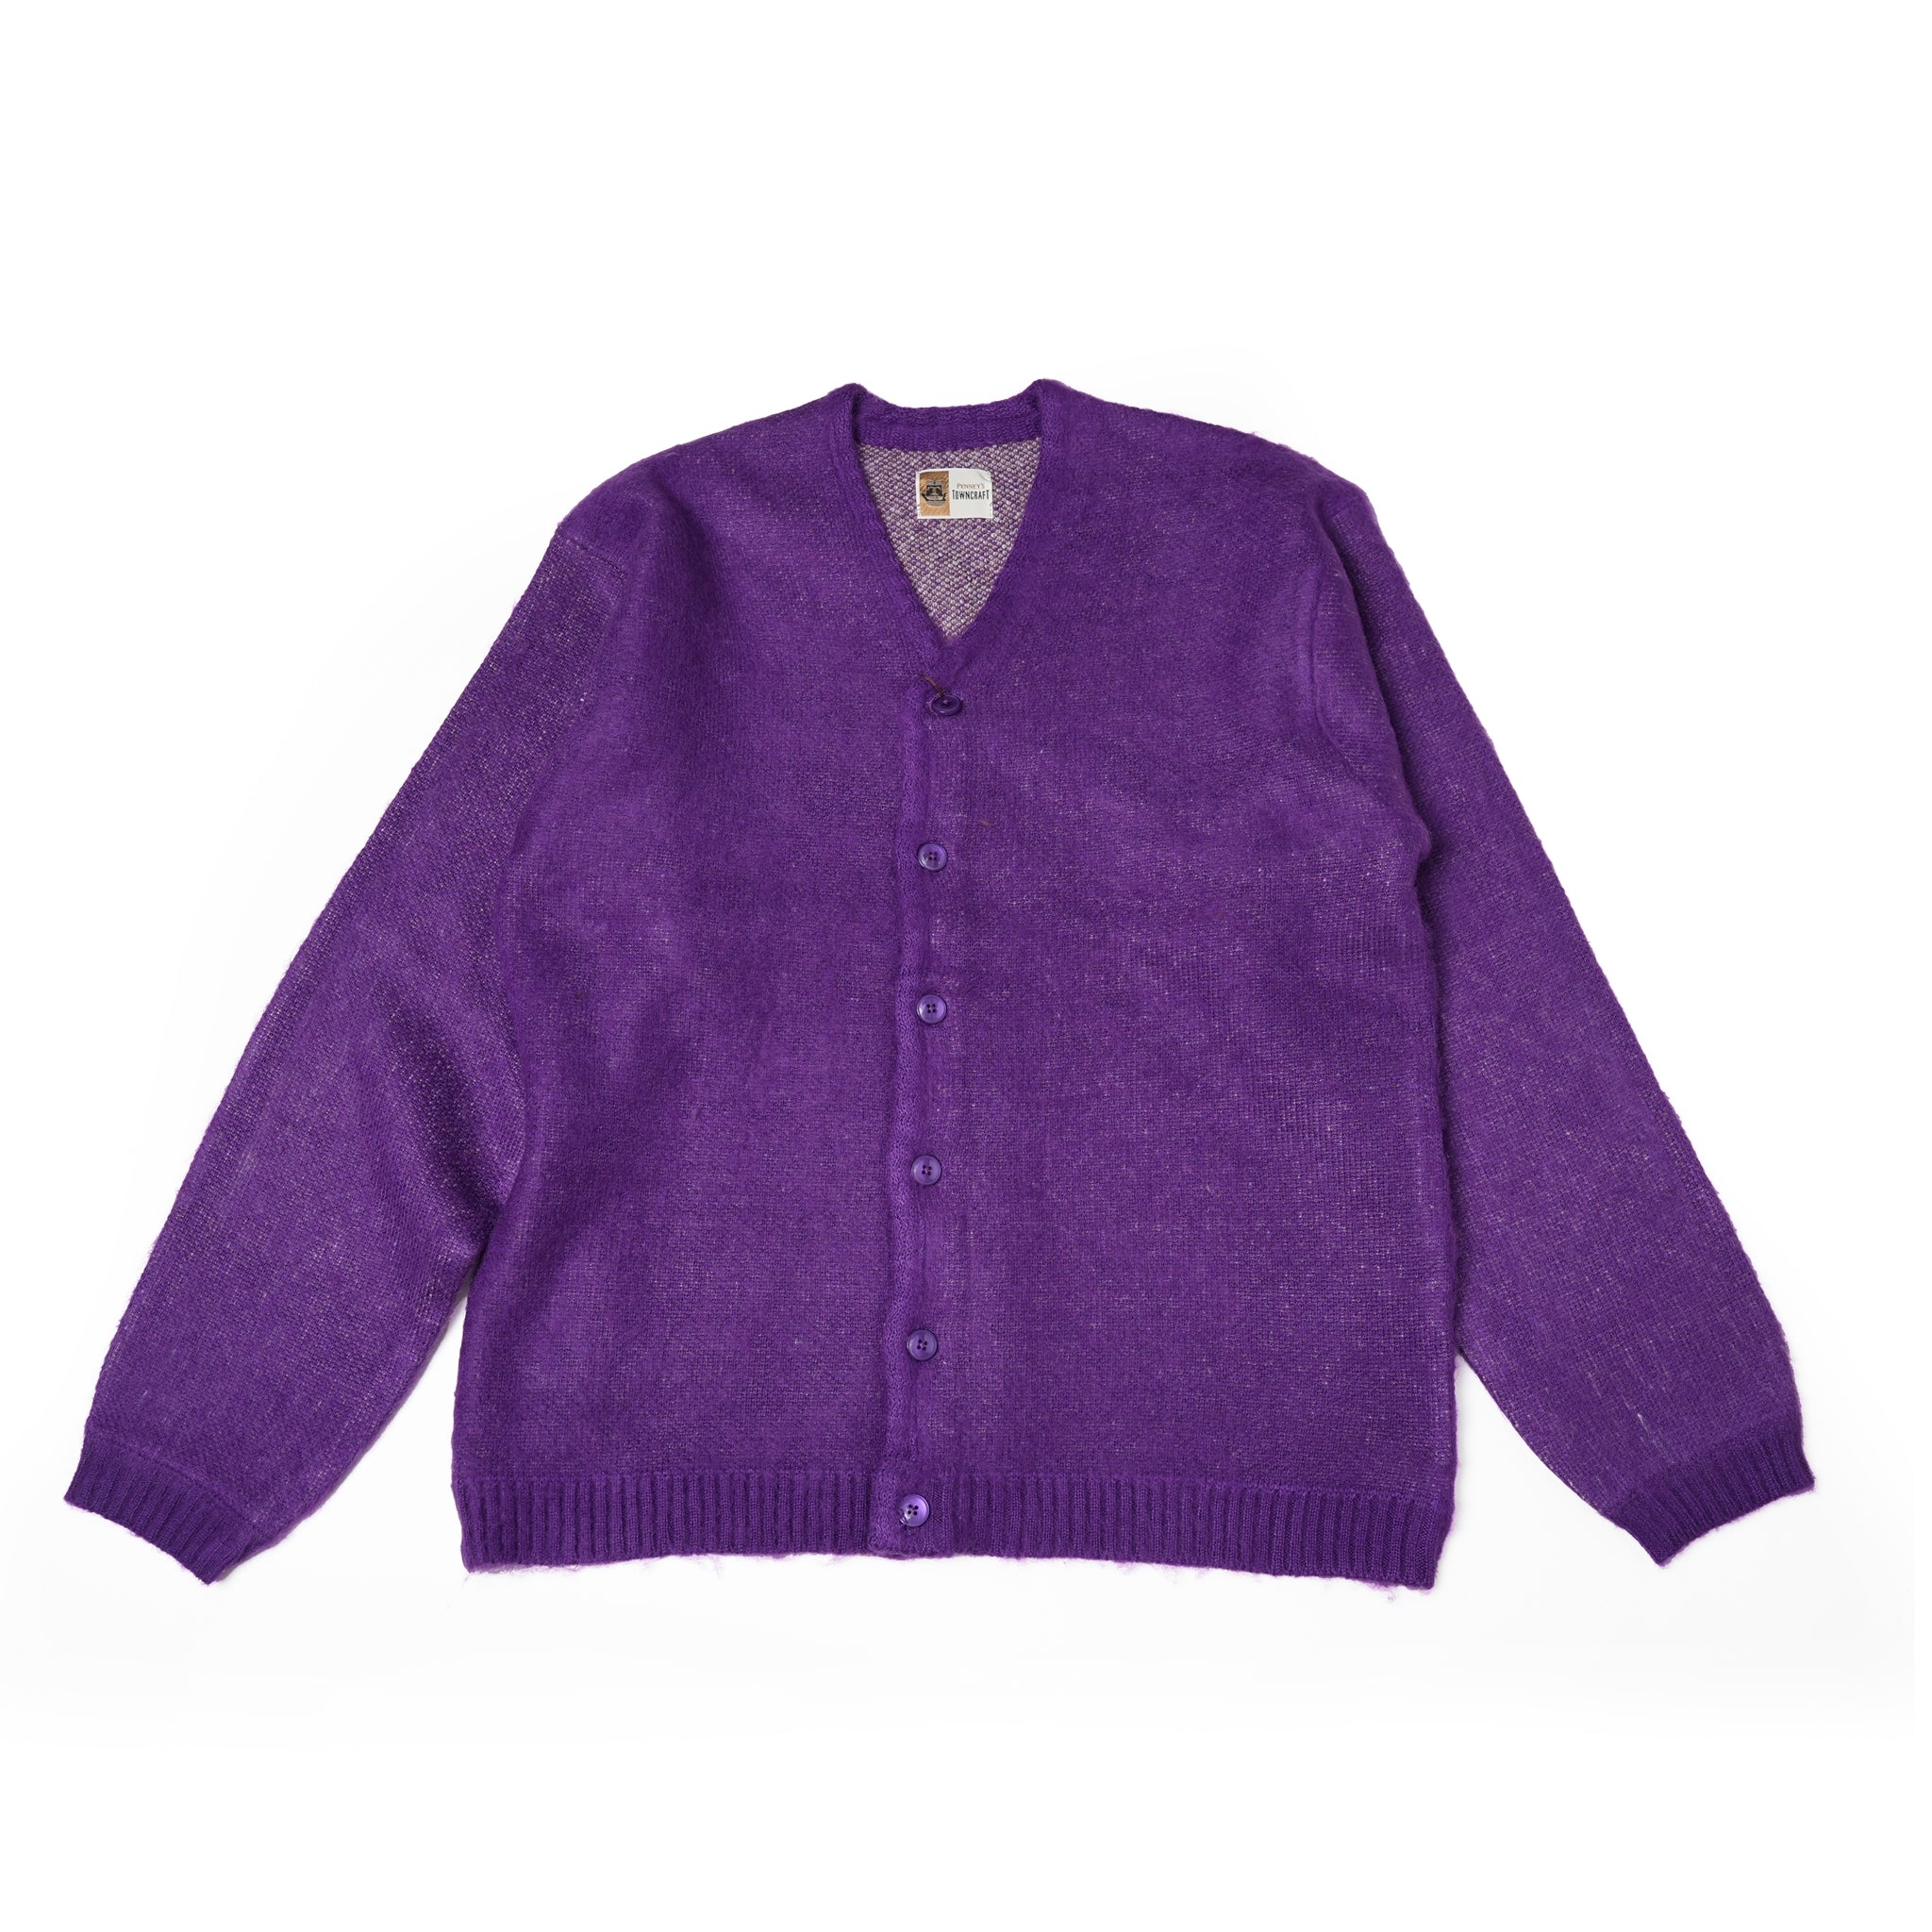 No:tc23f014b | Name:shaggy color cardigan | Color:Purple